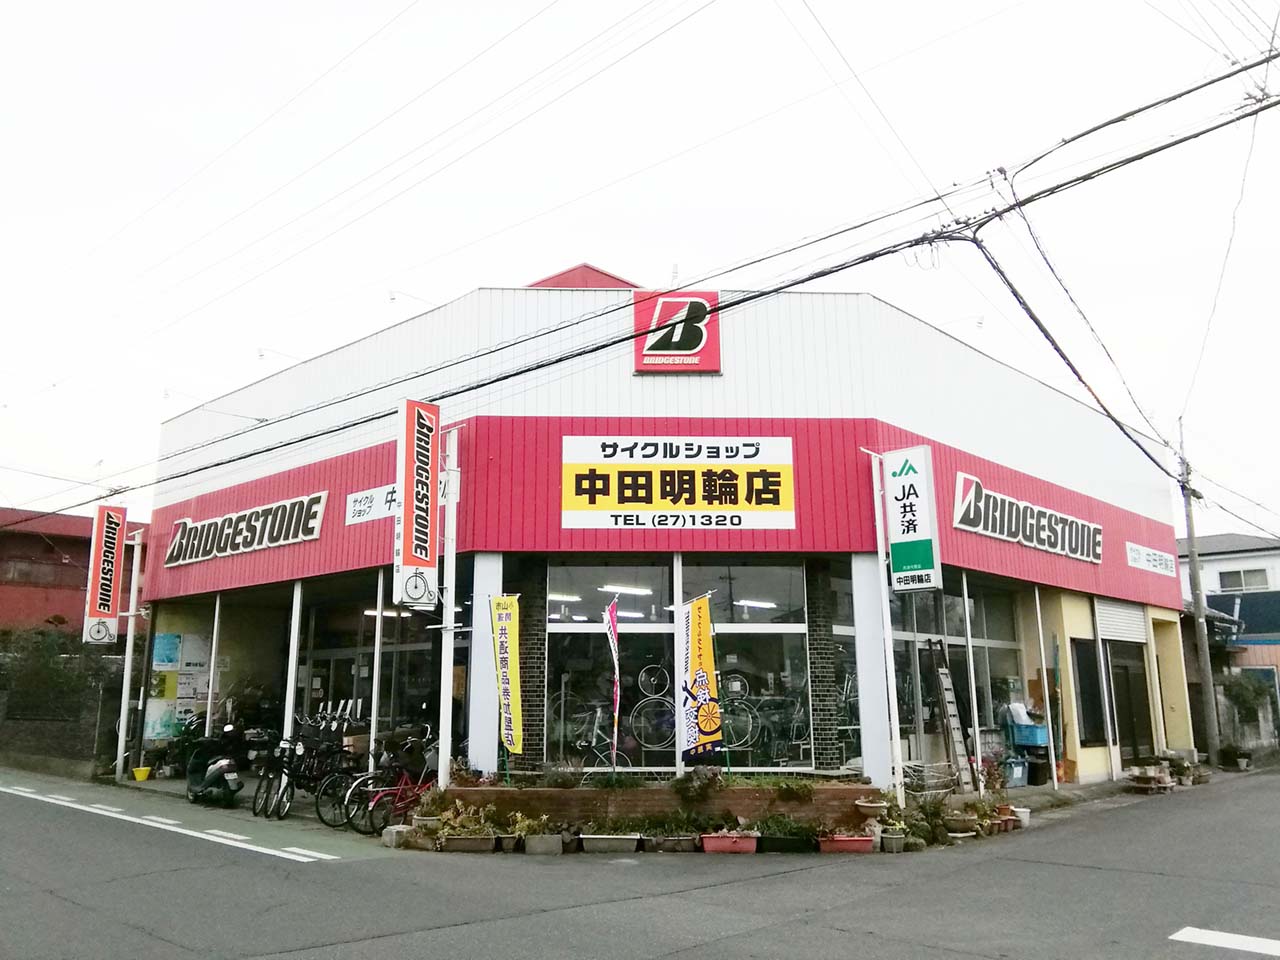 中田明輪店 オヤマシティ 栃木県小山市ポータルサイト